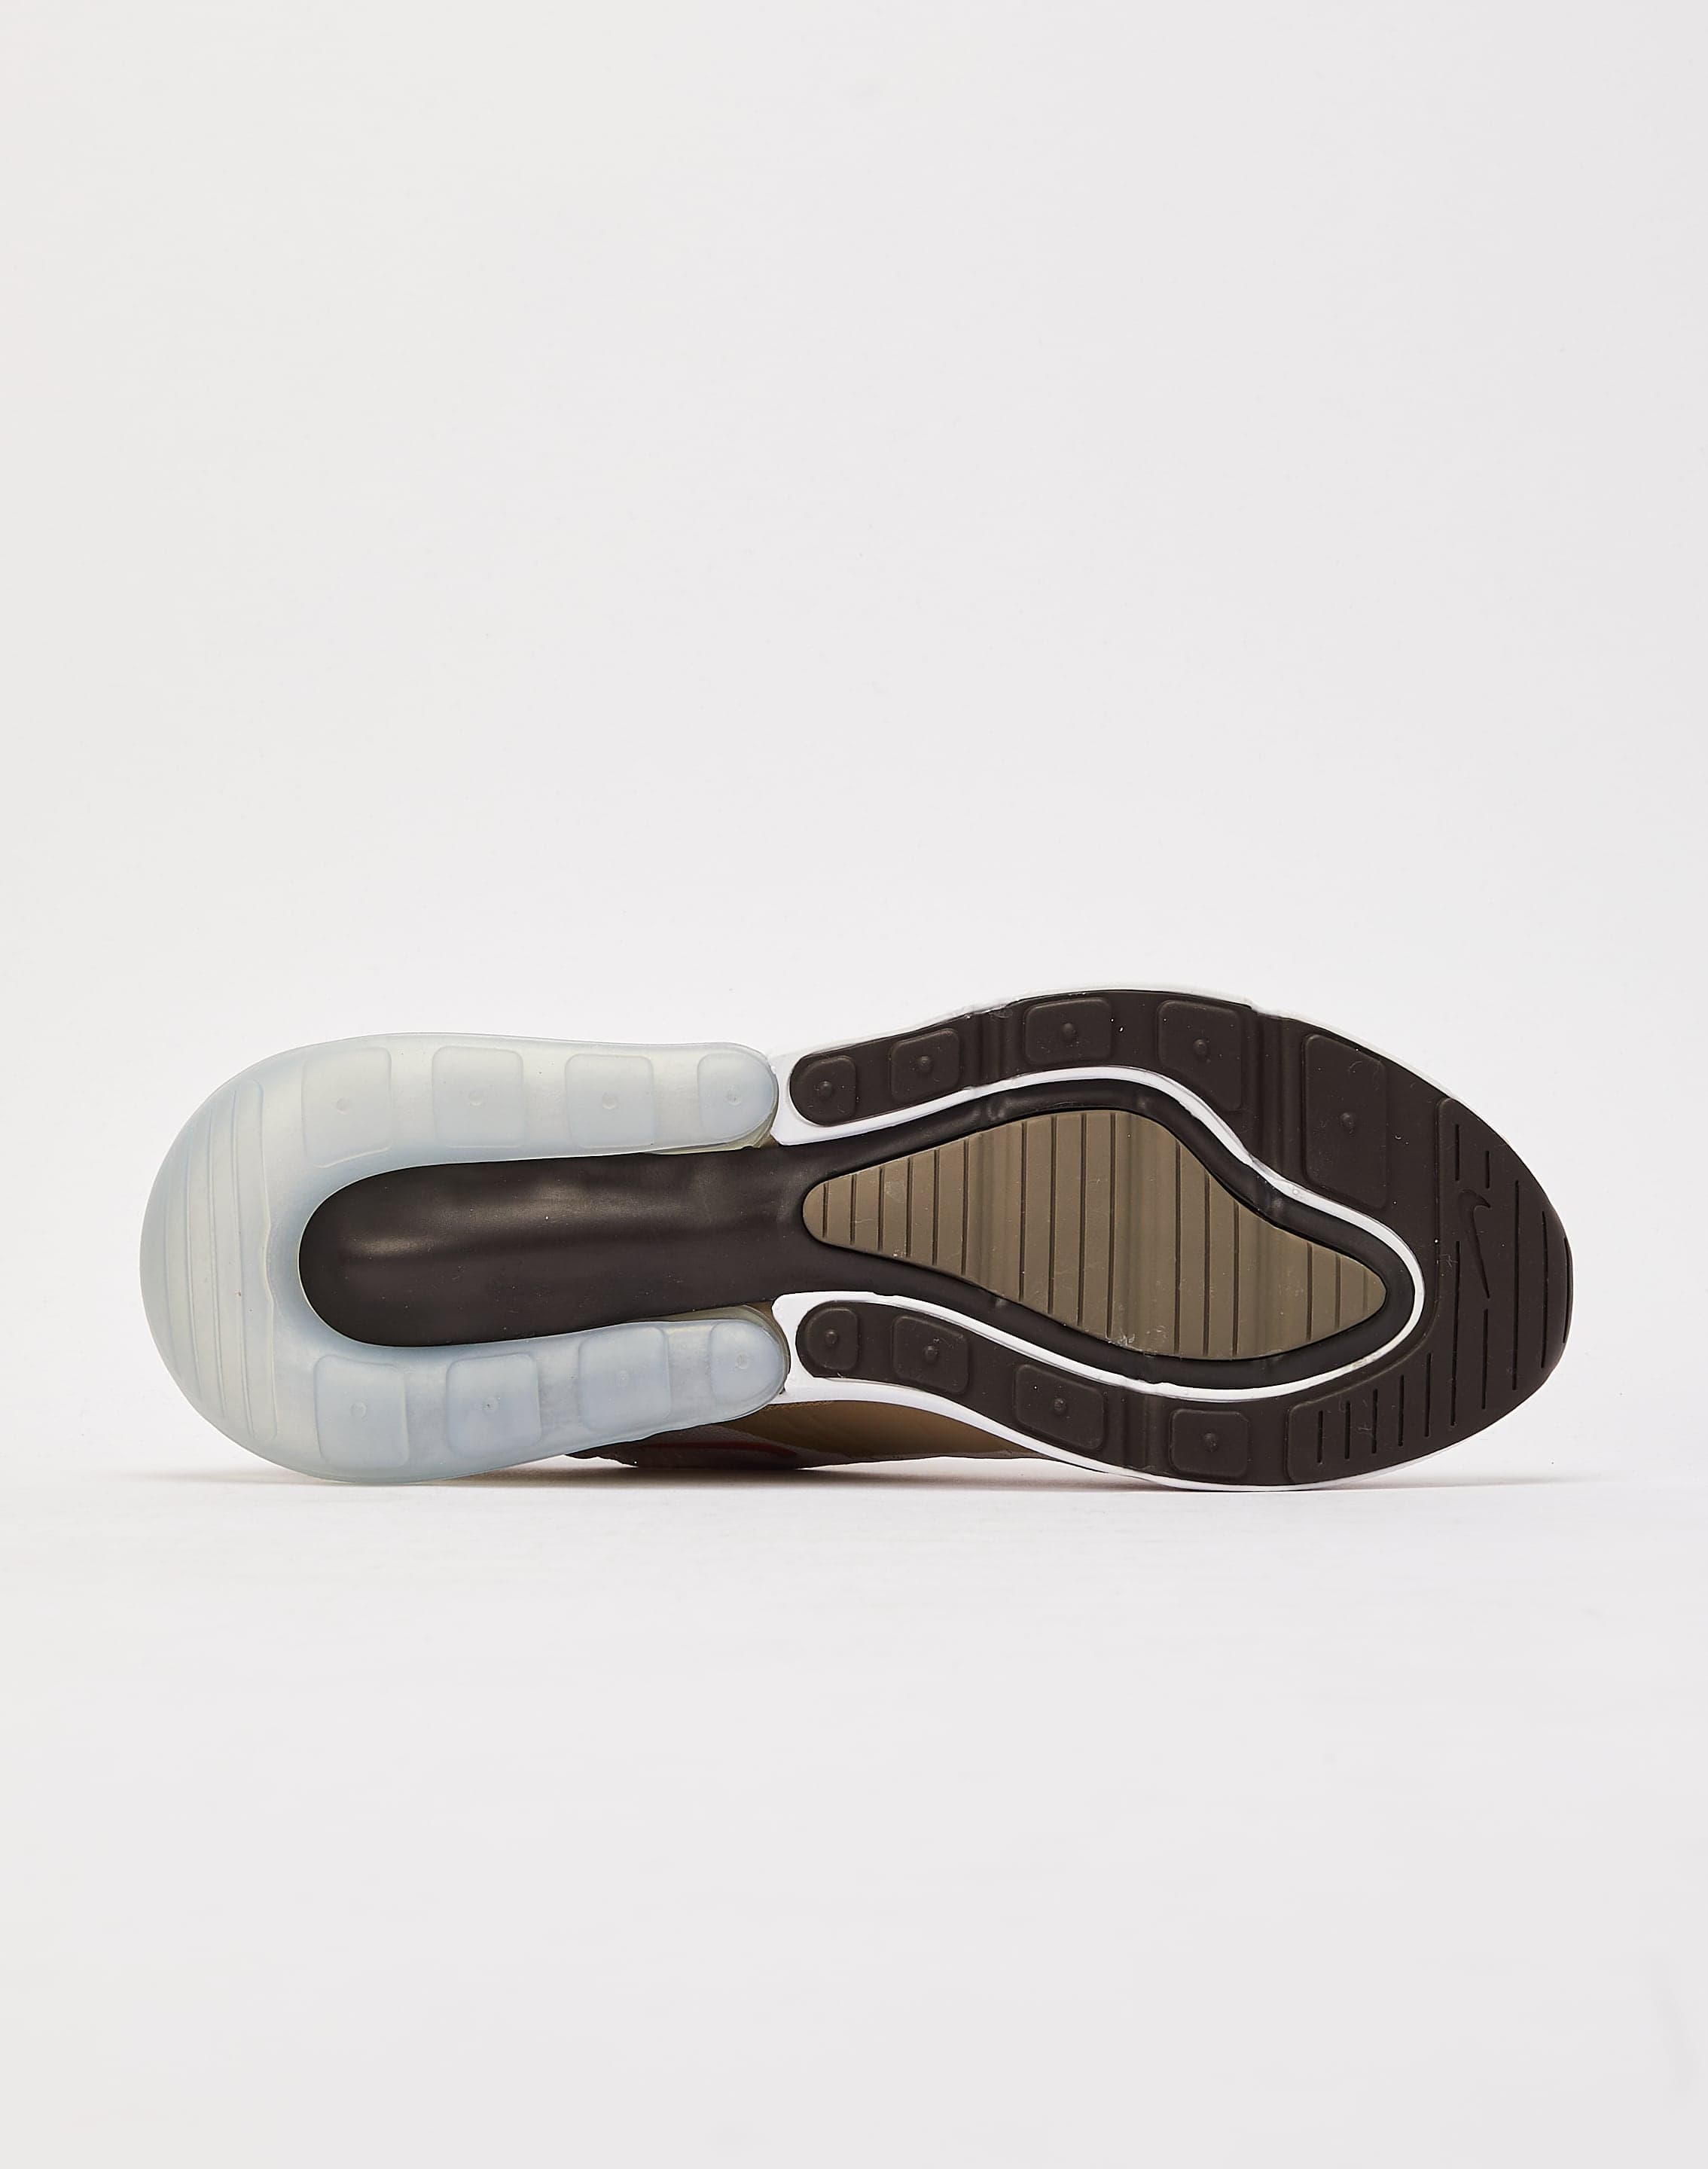 Nike Air Max 270 Cream Khaki Rust Brown DZ4396-200 Men's Size 8 - 10 Shoes  #104